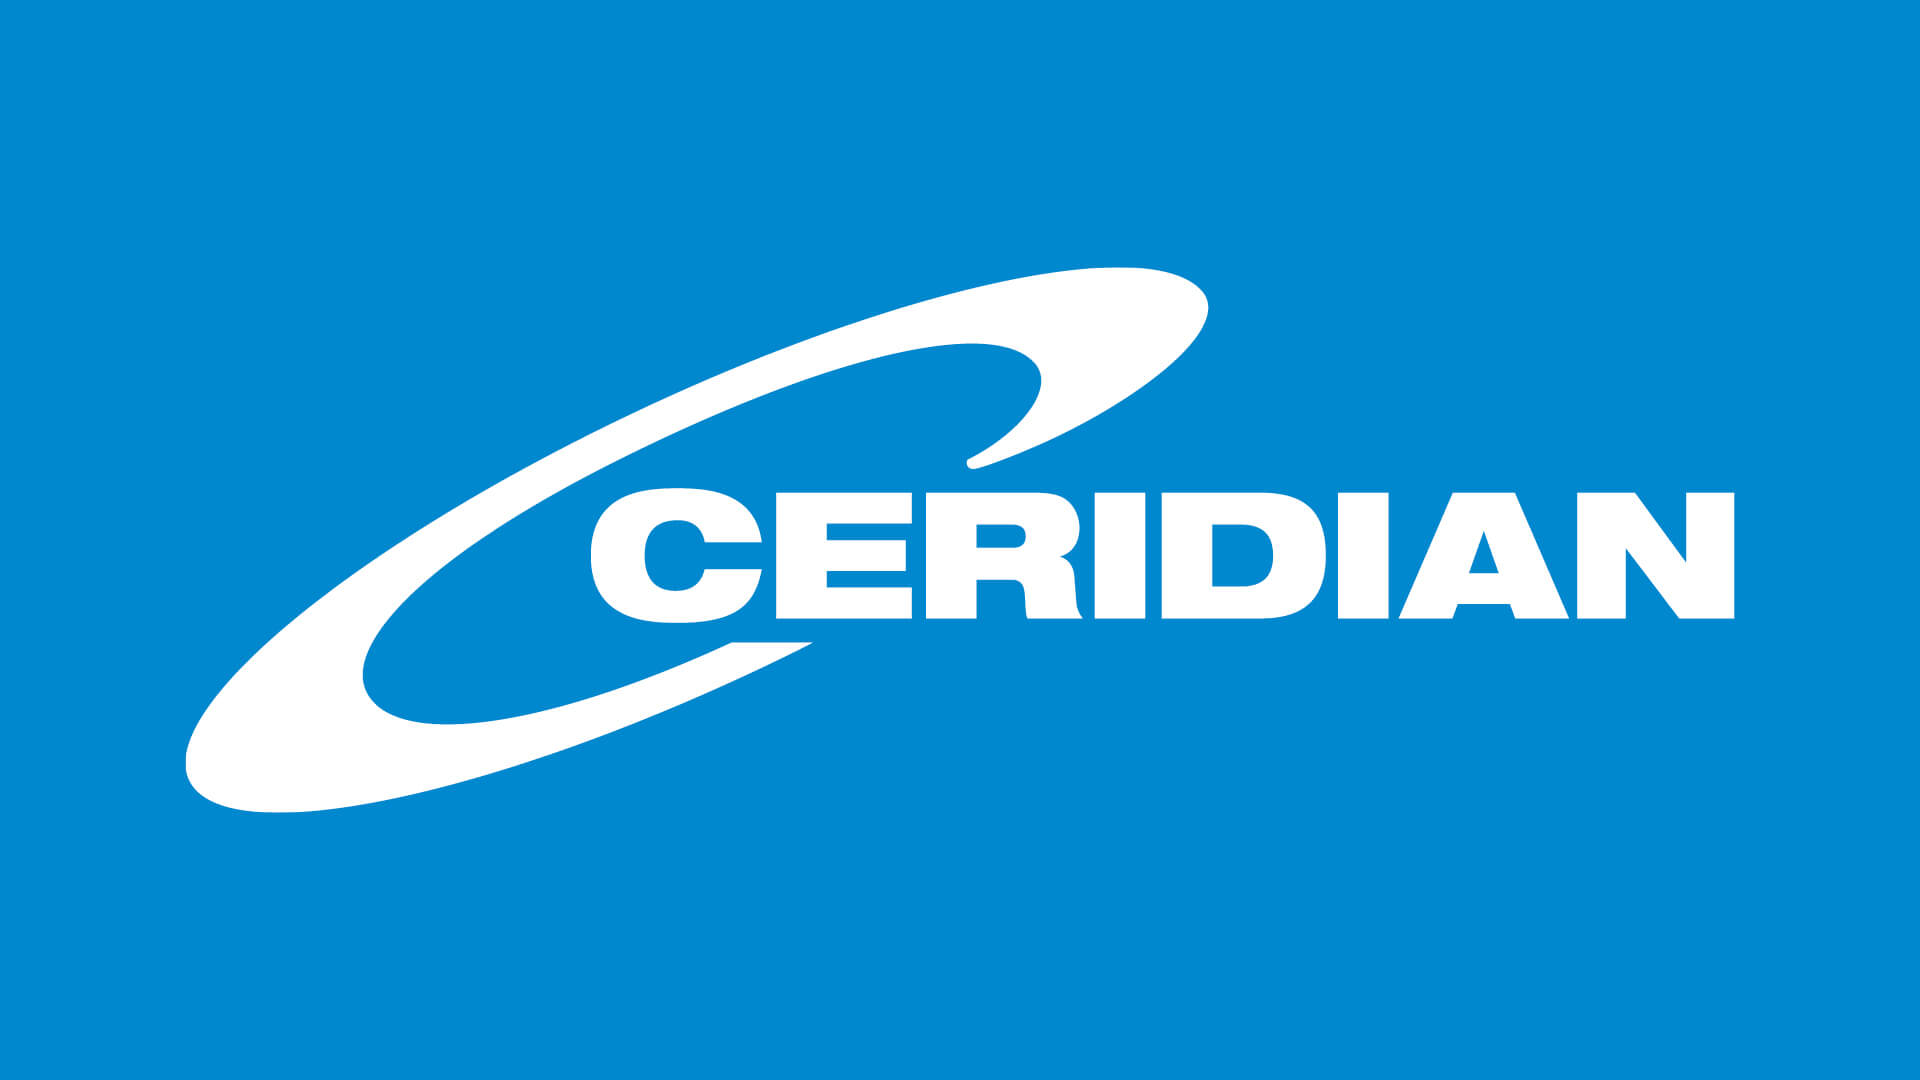 Ceridian-logo